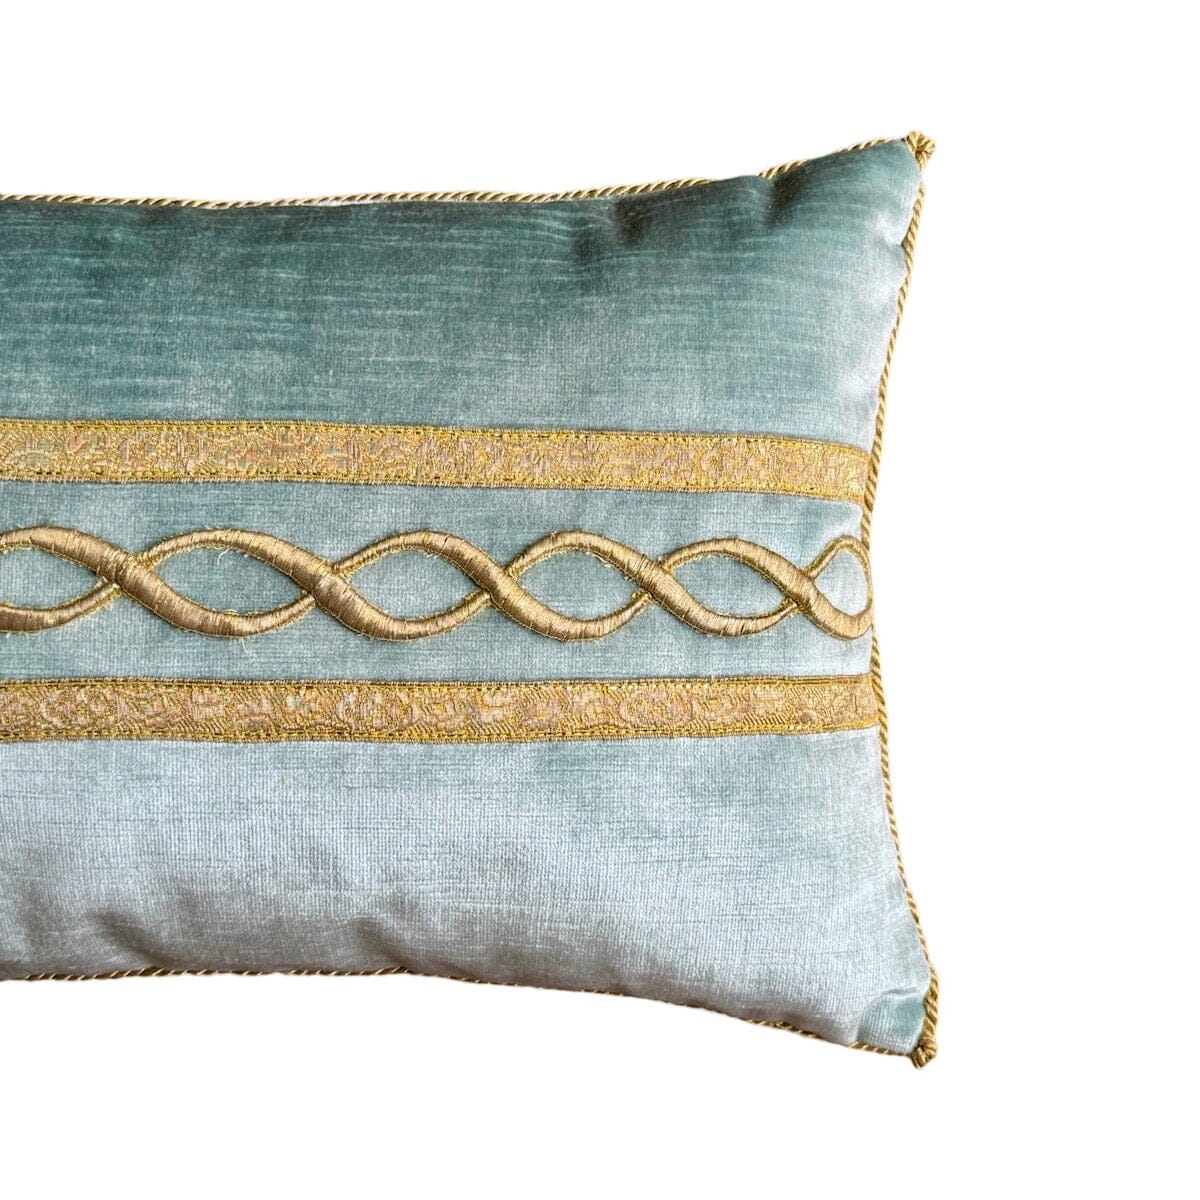 Antique Ottoman Empire Gold Metallic Embroidery (#E031924 | 12 x 22") New Pillows B. Viz Design 